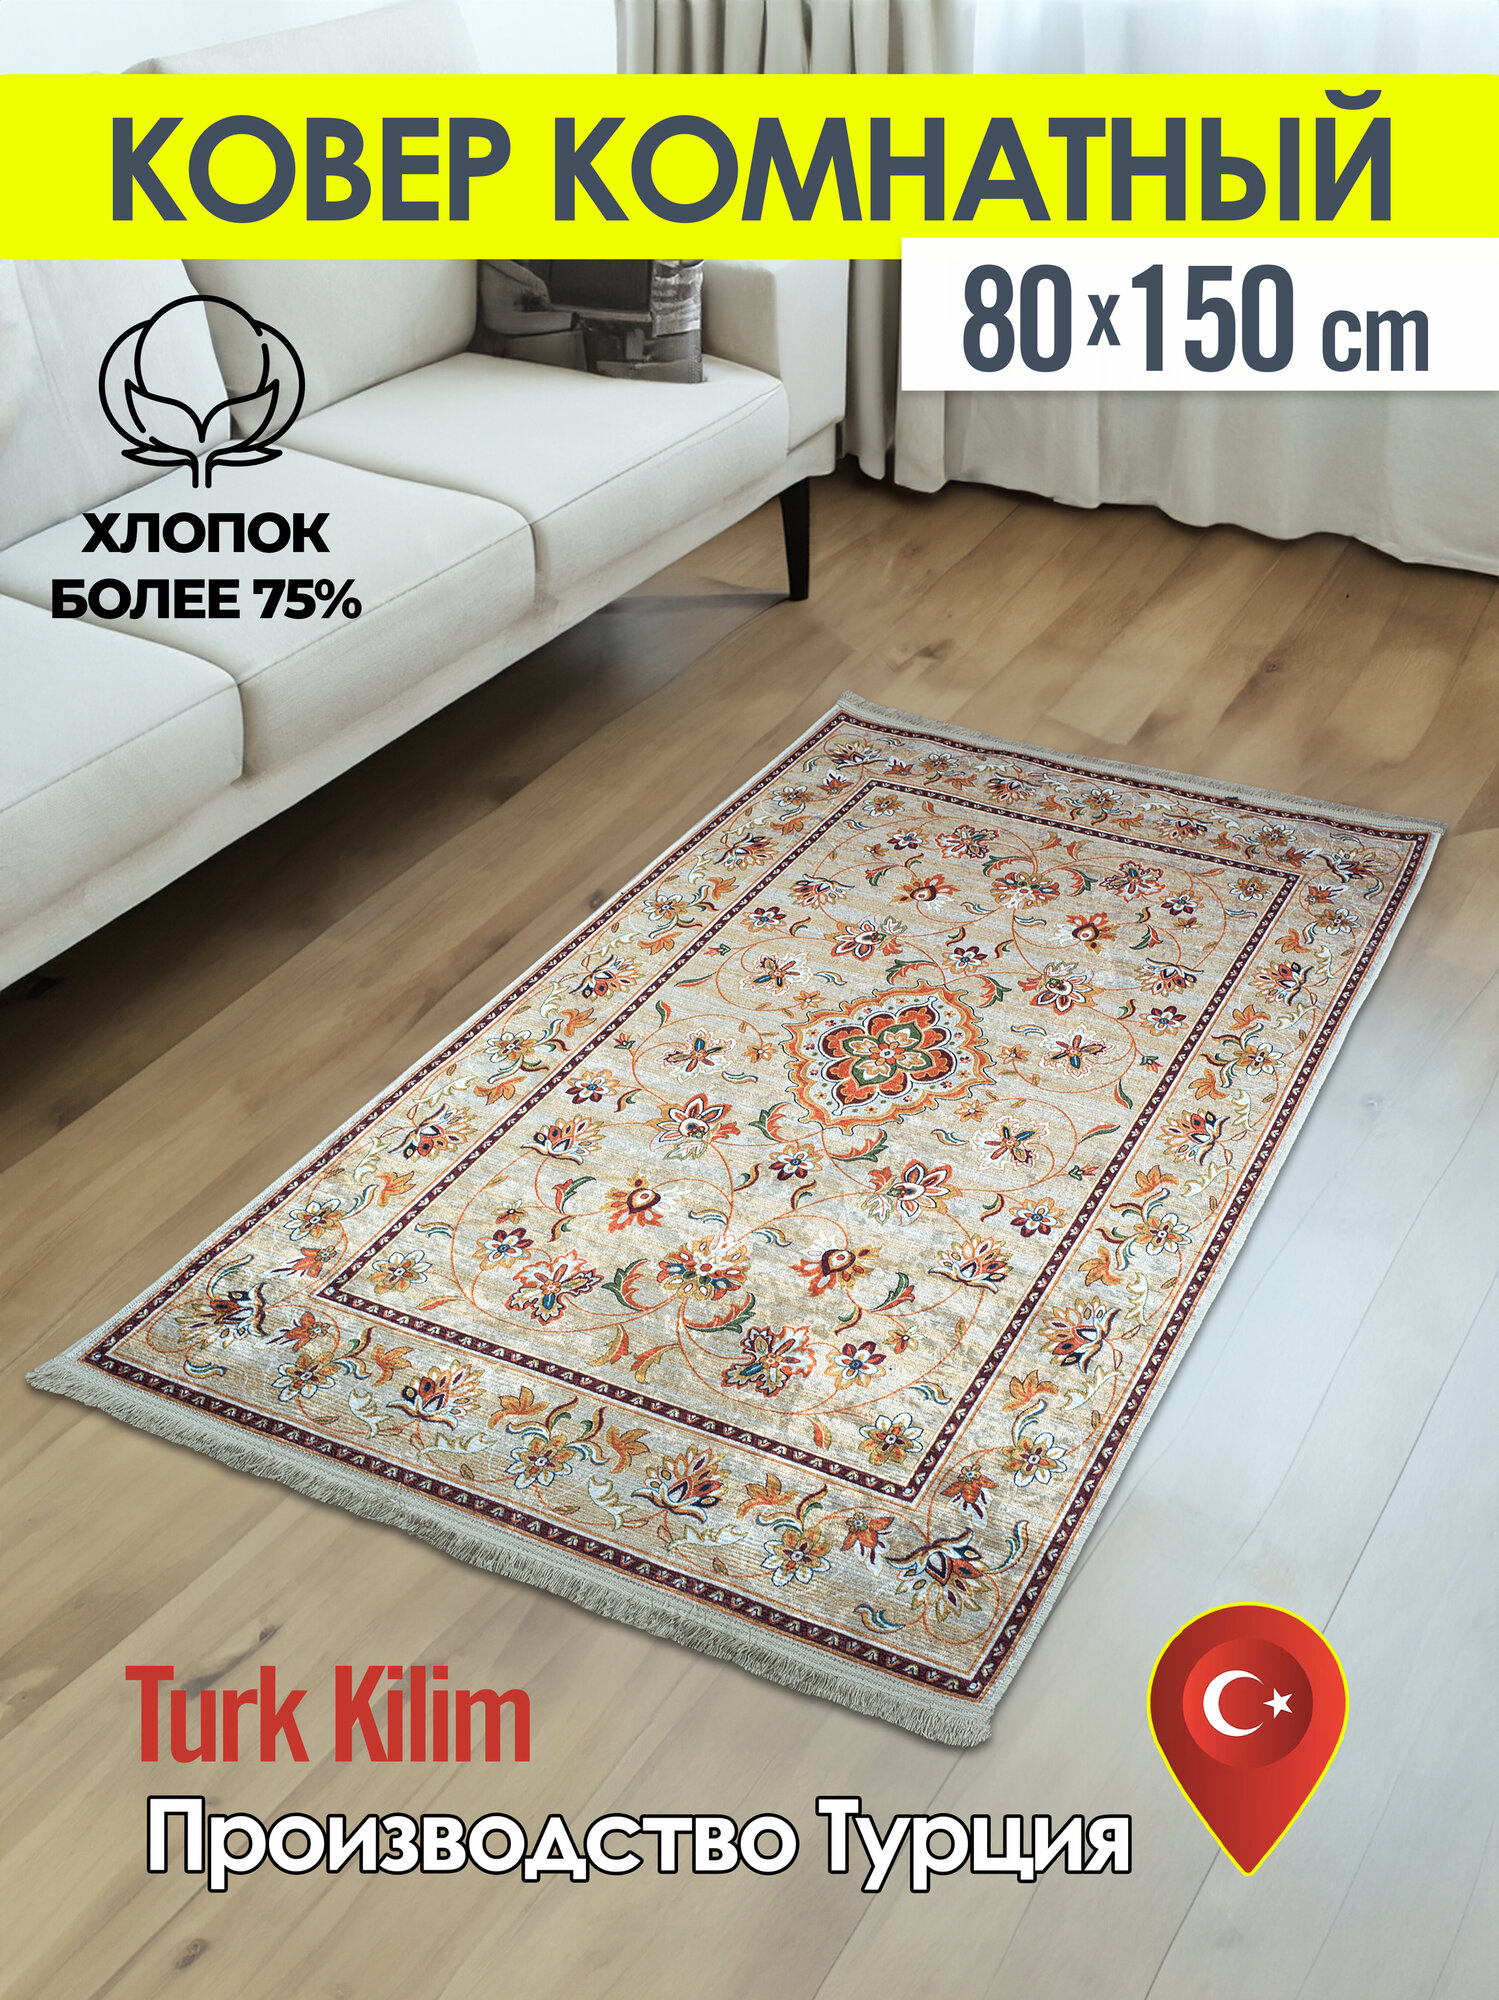 Турецкий комнатный ковер килим из хлопка 80*150 см